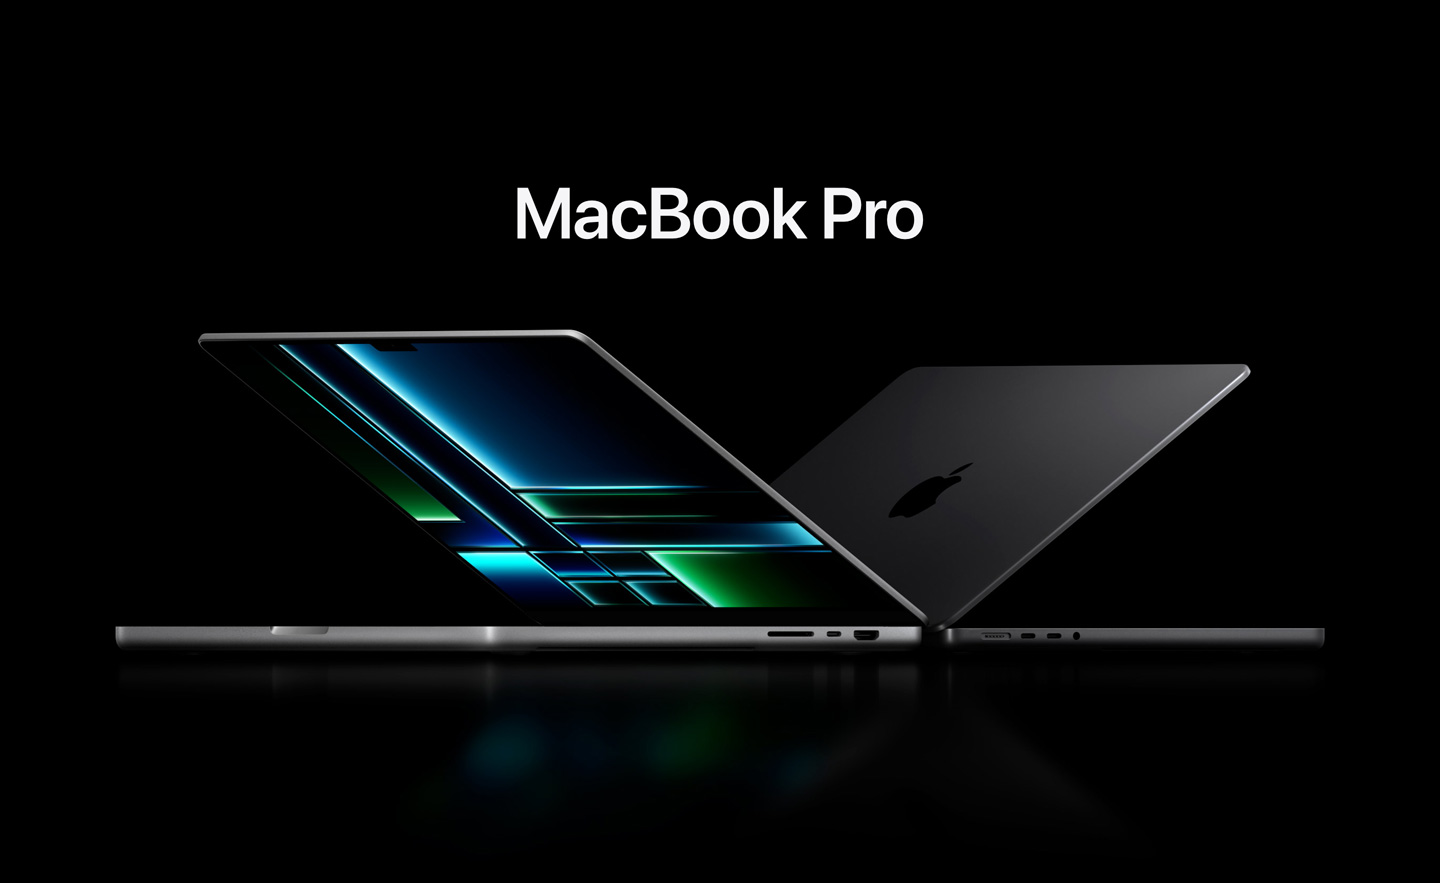 Los MacBook Pro y Mac Mini con chips M3 no saldrán hasta el año que viene - Bloomberg